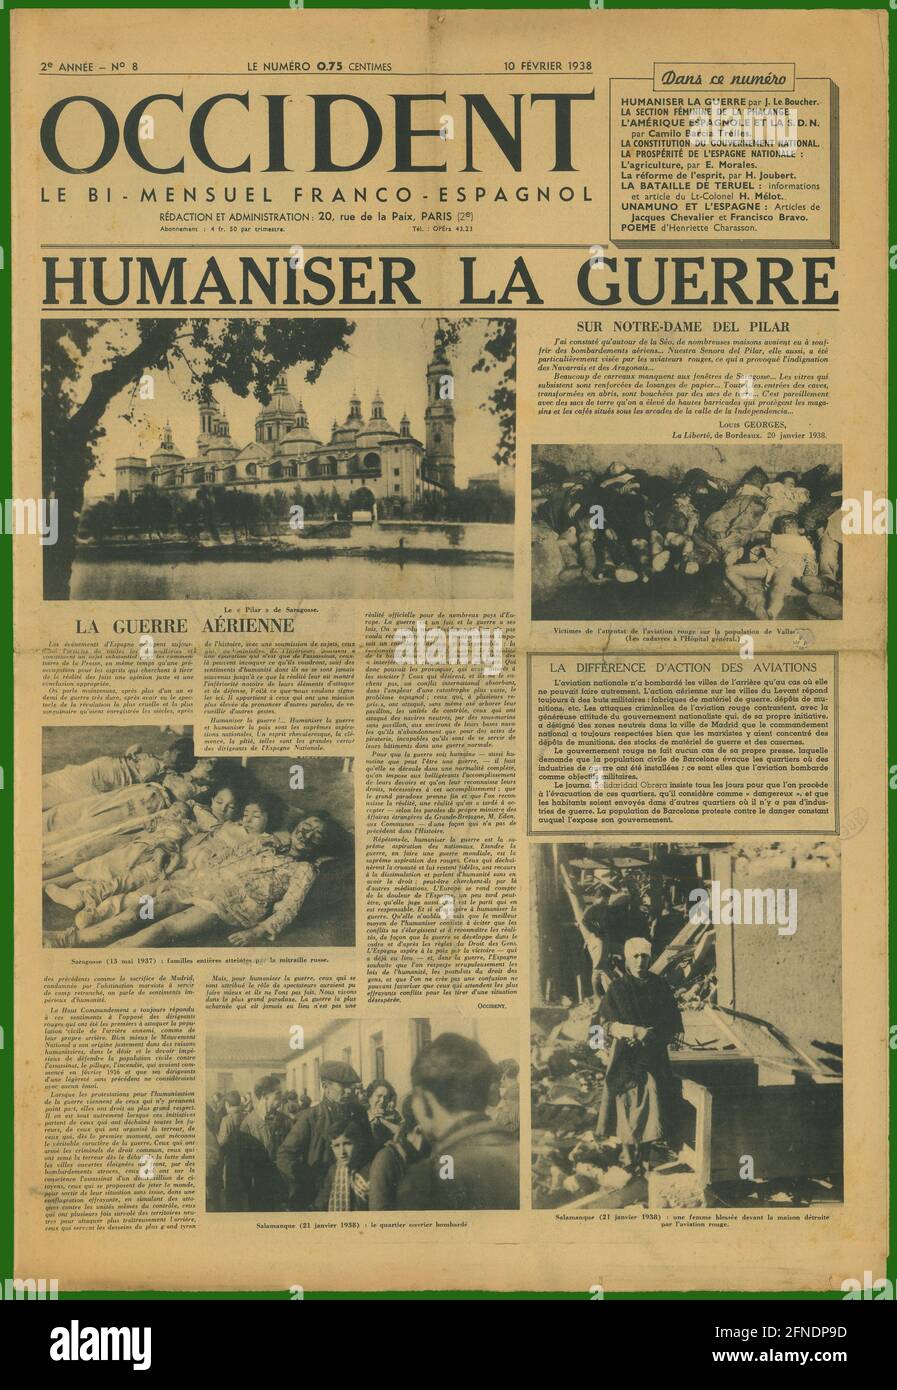 Guerra civil española (1936-1939). Portada del Periódico nacional franco-español Okzident, editado en París, febrero de 1938. Stockfoto